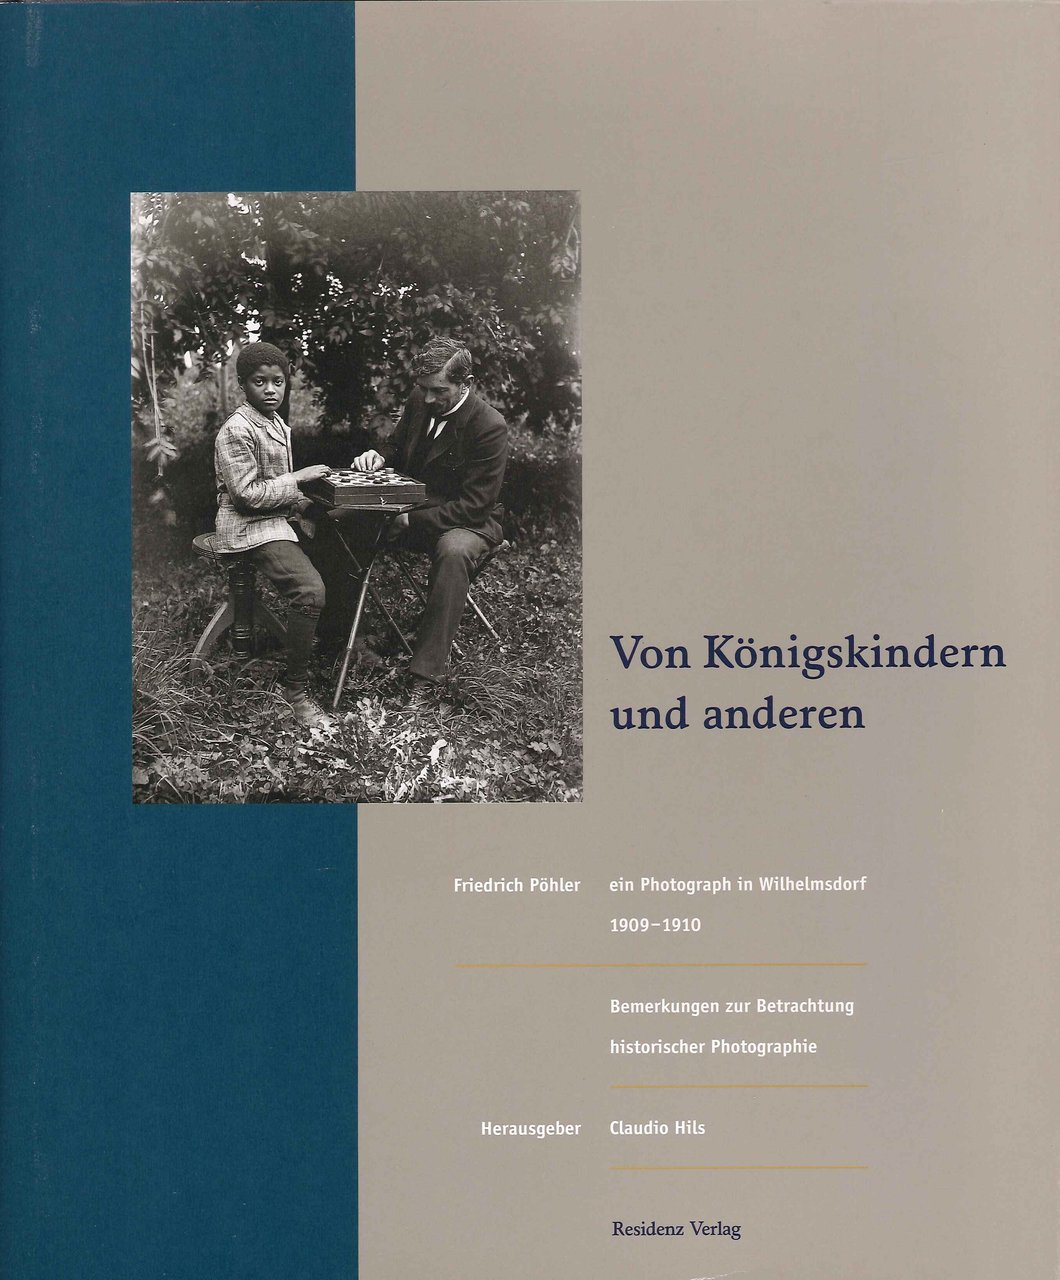 Von Königskindern Und Anderen, Wien, Residenz Verlag, 1997